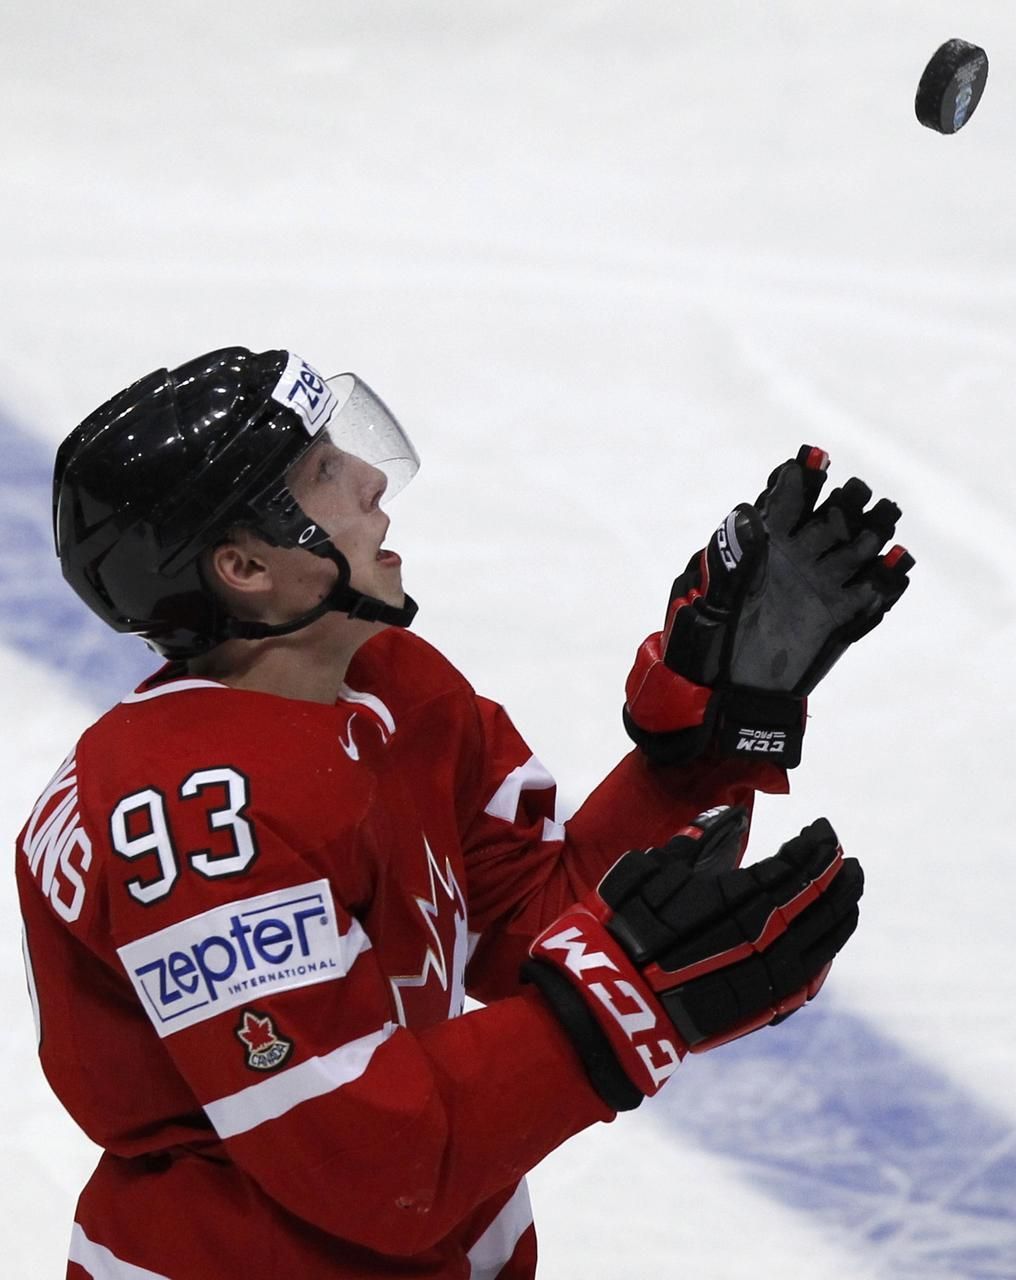 MS v hokeji 2012: Kanada - Slovensko (Nugent-Hopkins)